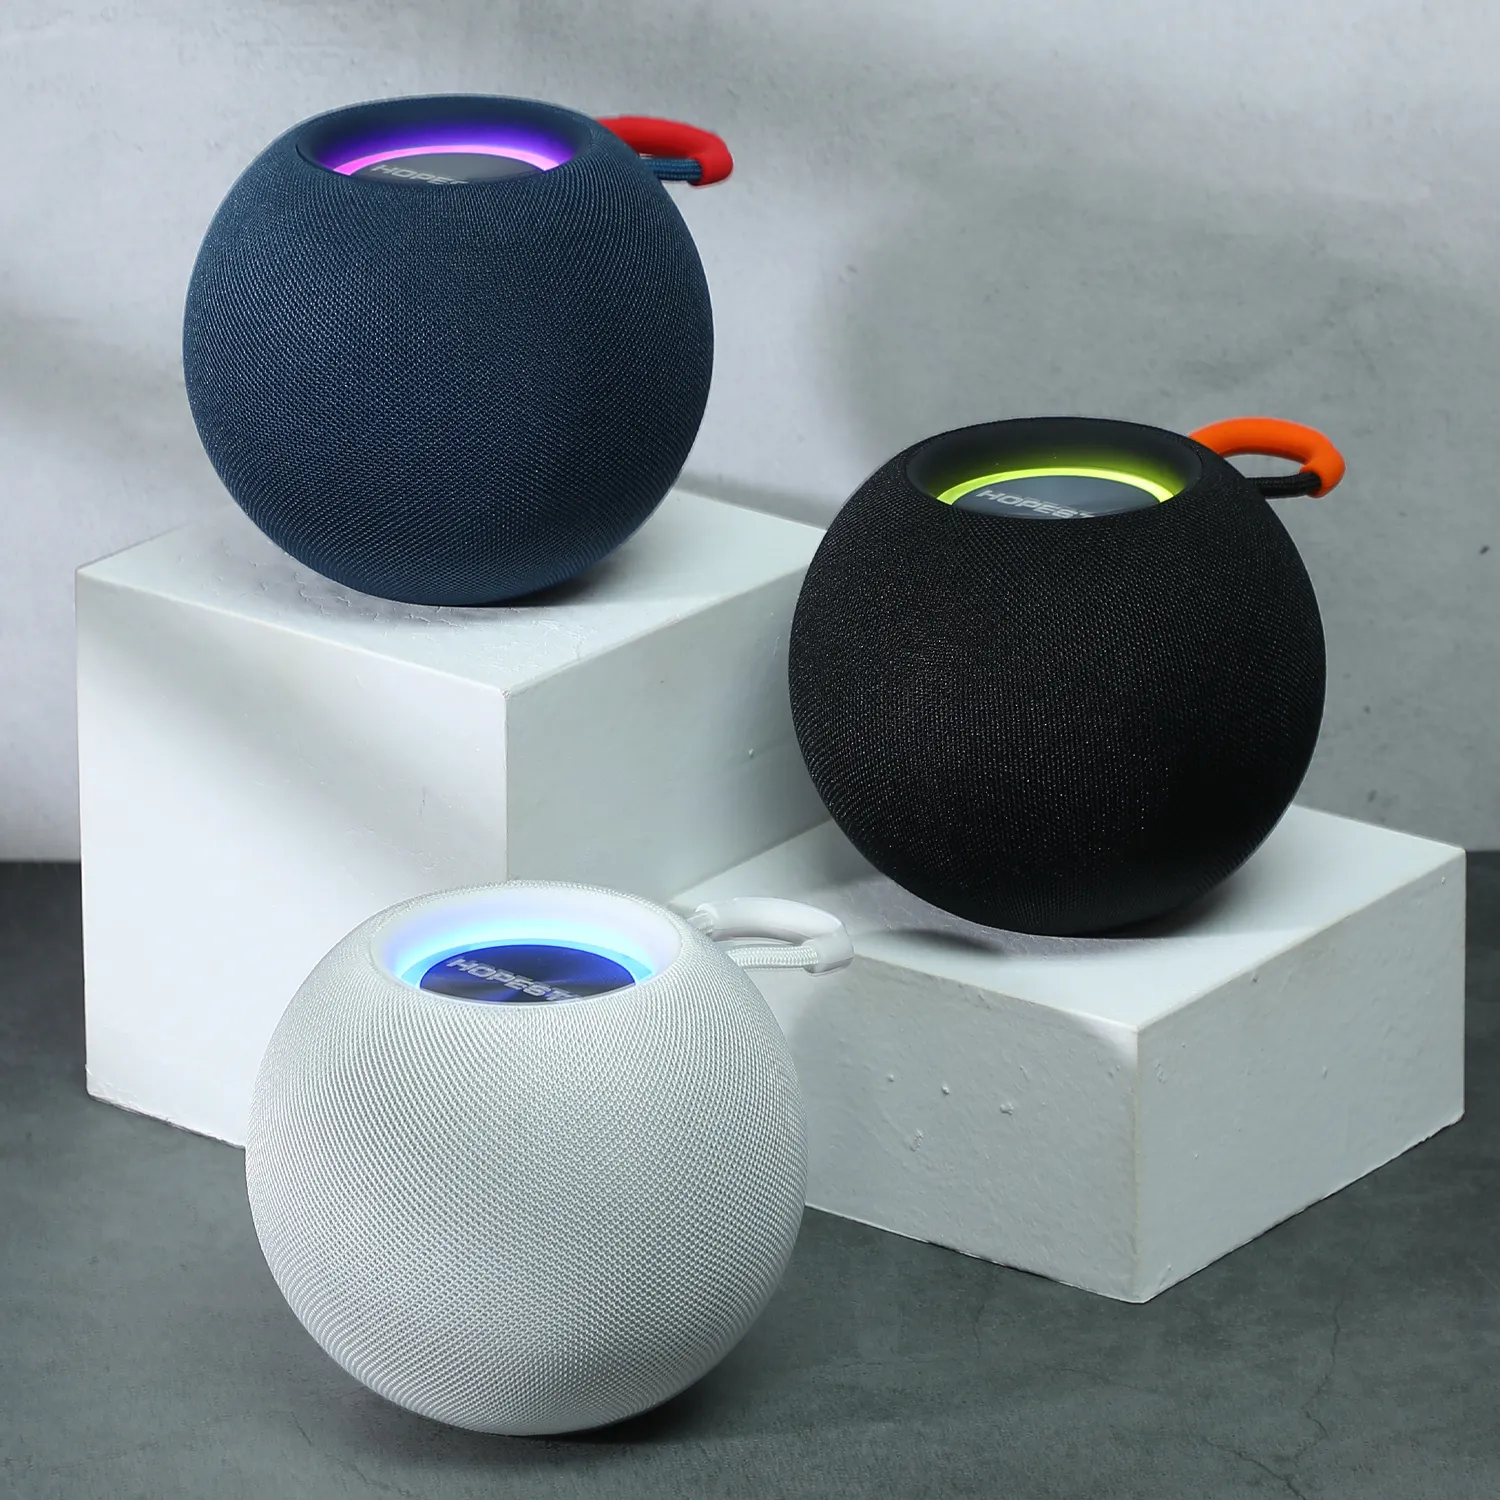 2021 جديد 360 درجة المحيطي Homepod المتكلم مصغرة مكبر صوت لاسلكي قابل للحمل لتفاح Homepod